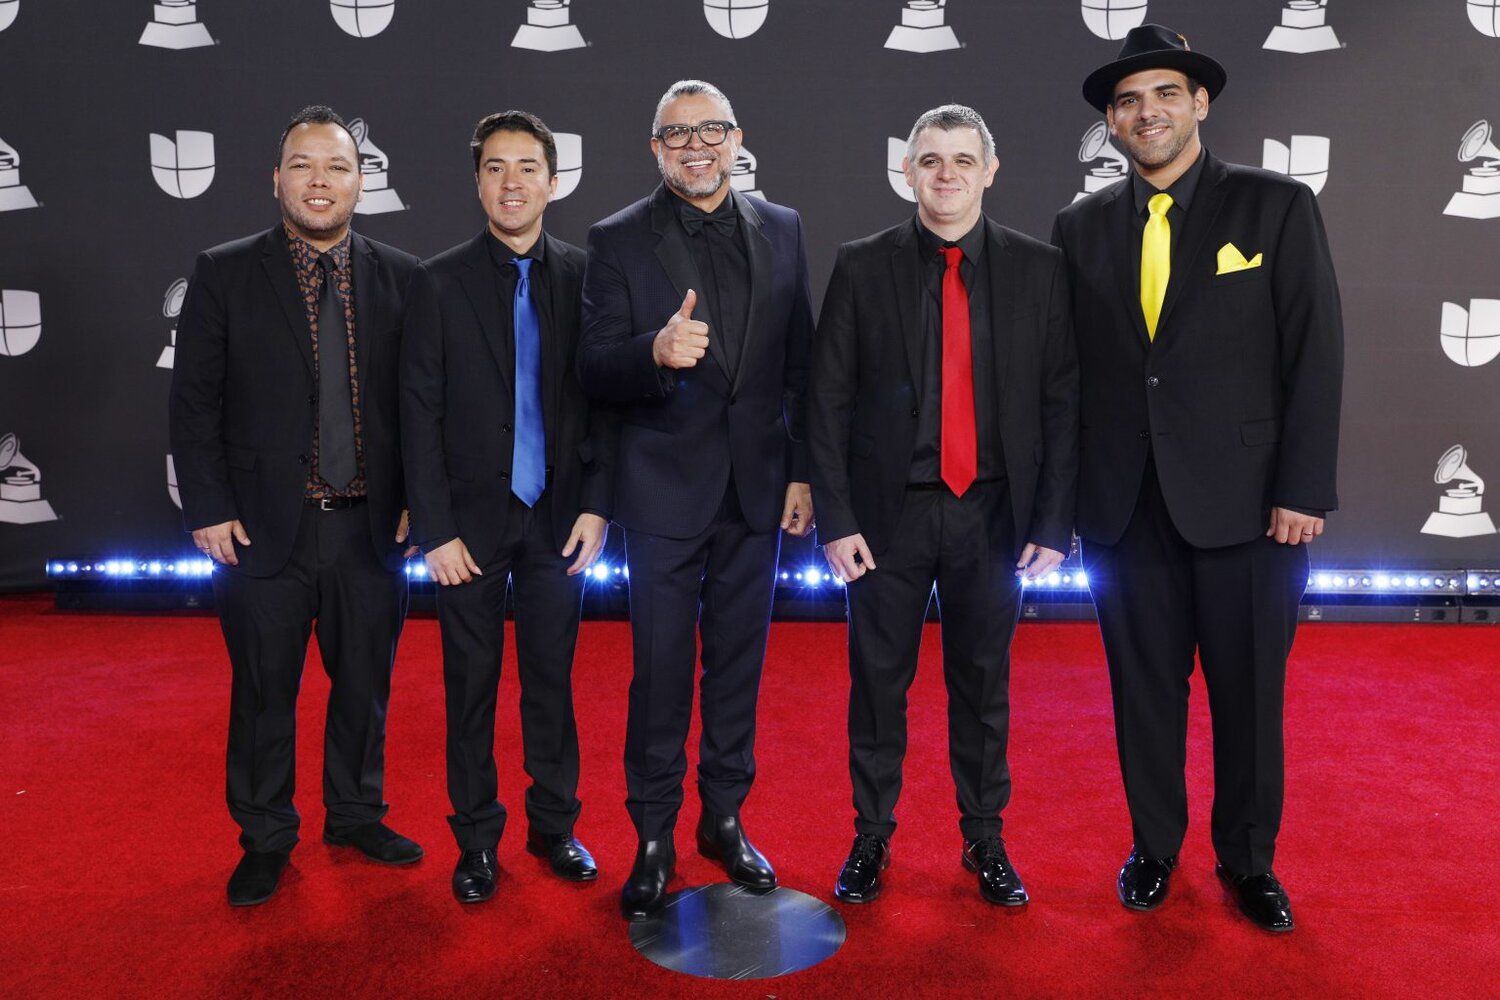 C4 Trío y Luis Enrique a los Grammy anglosajones - Guataca